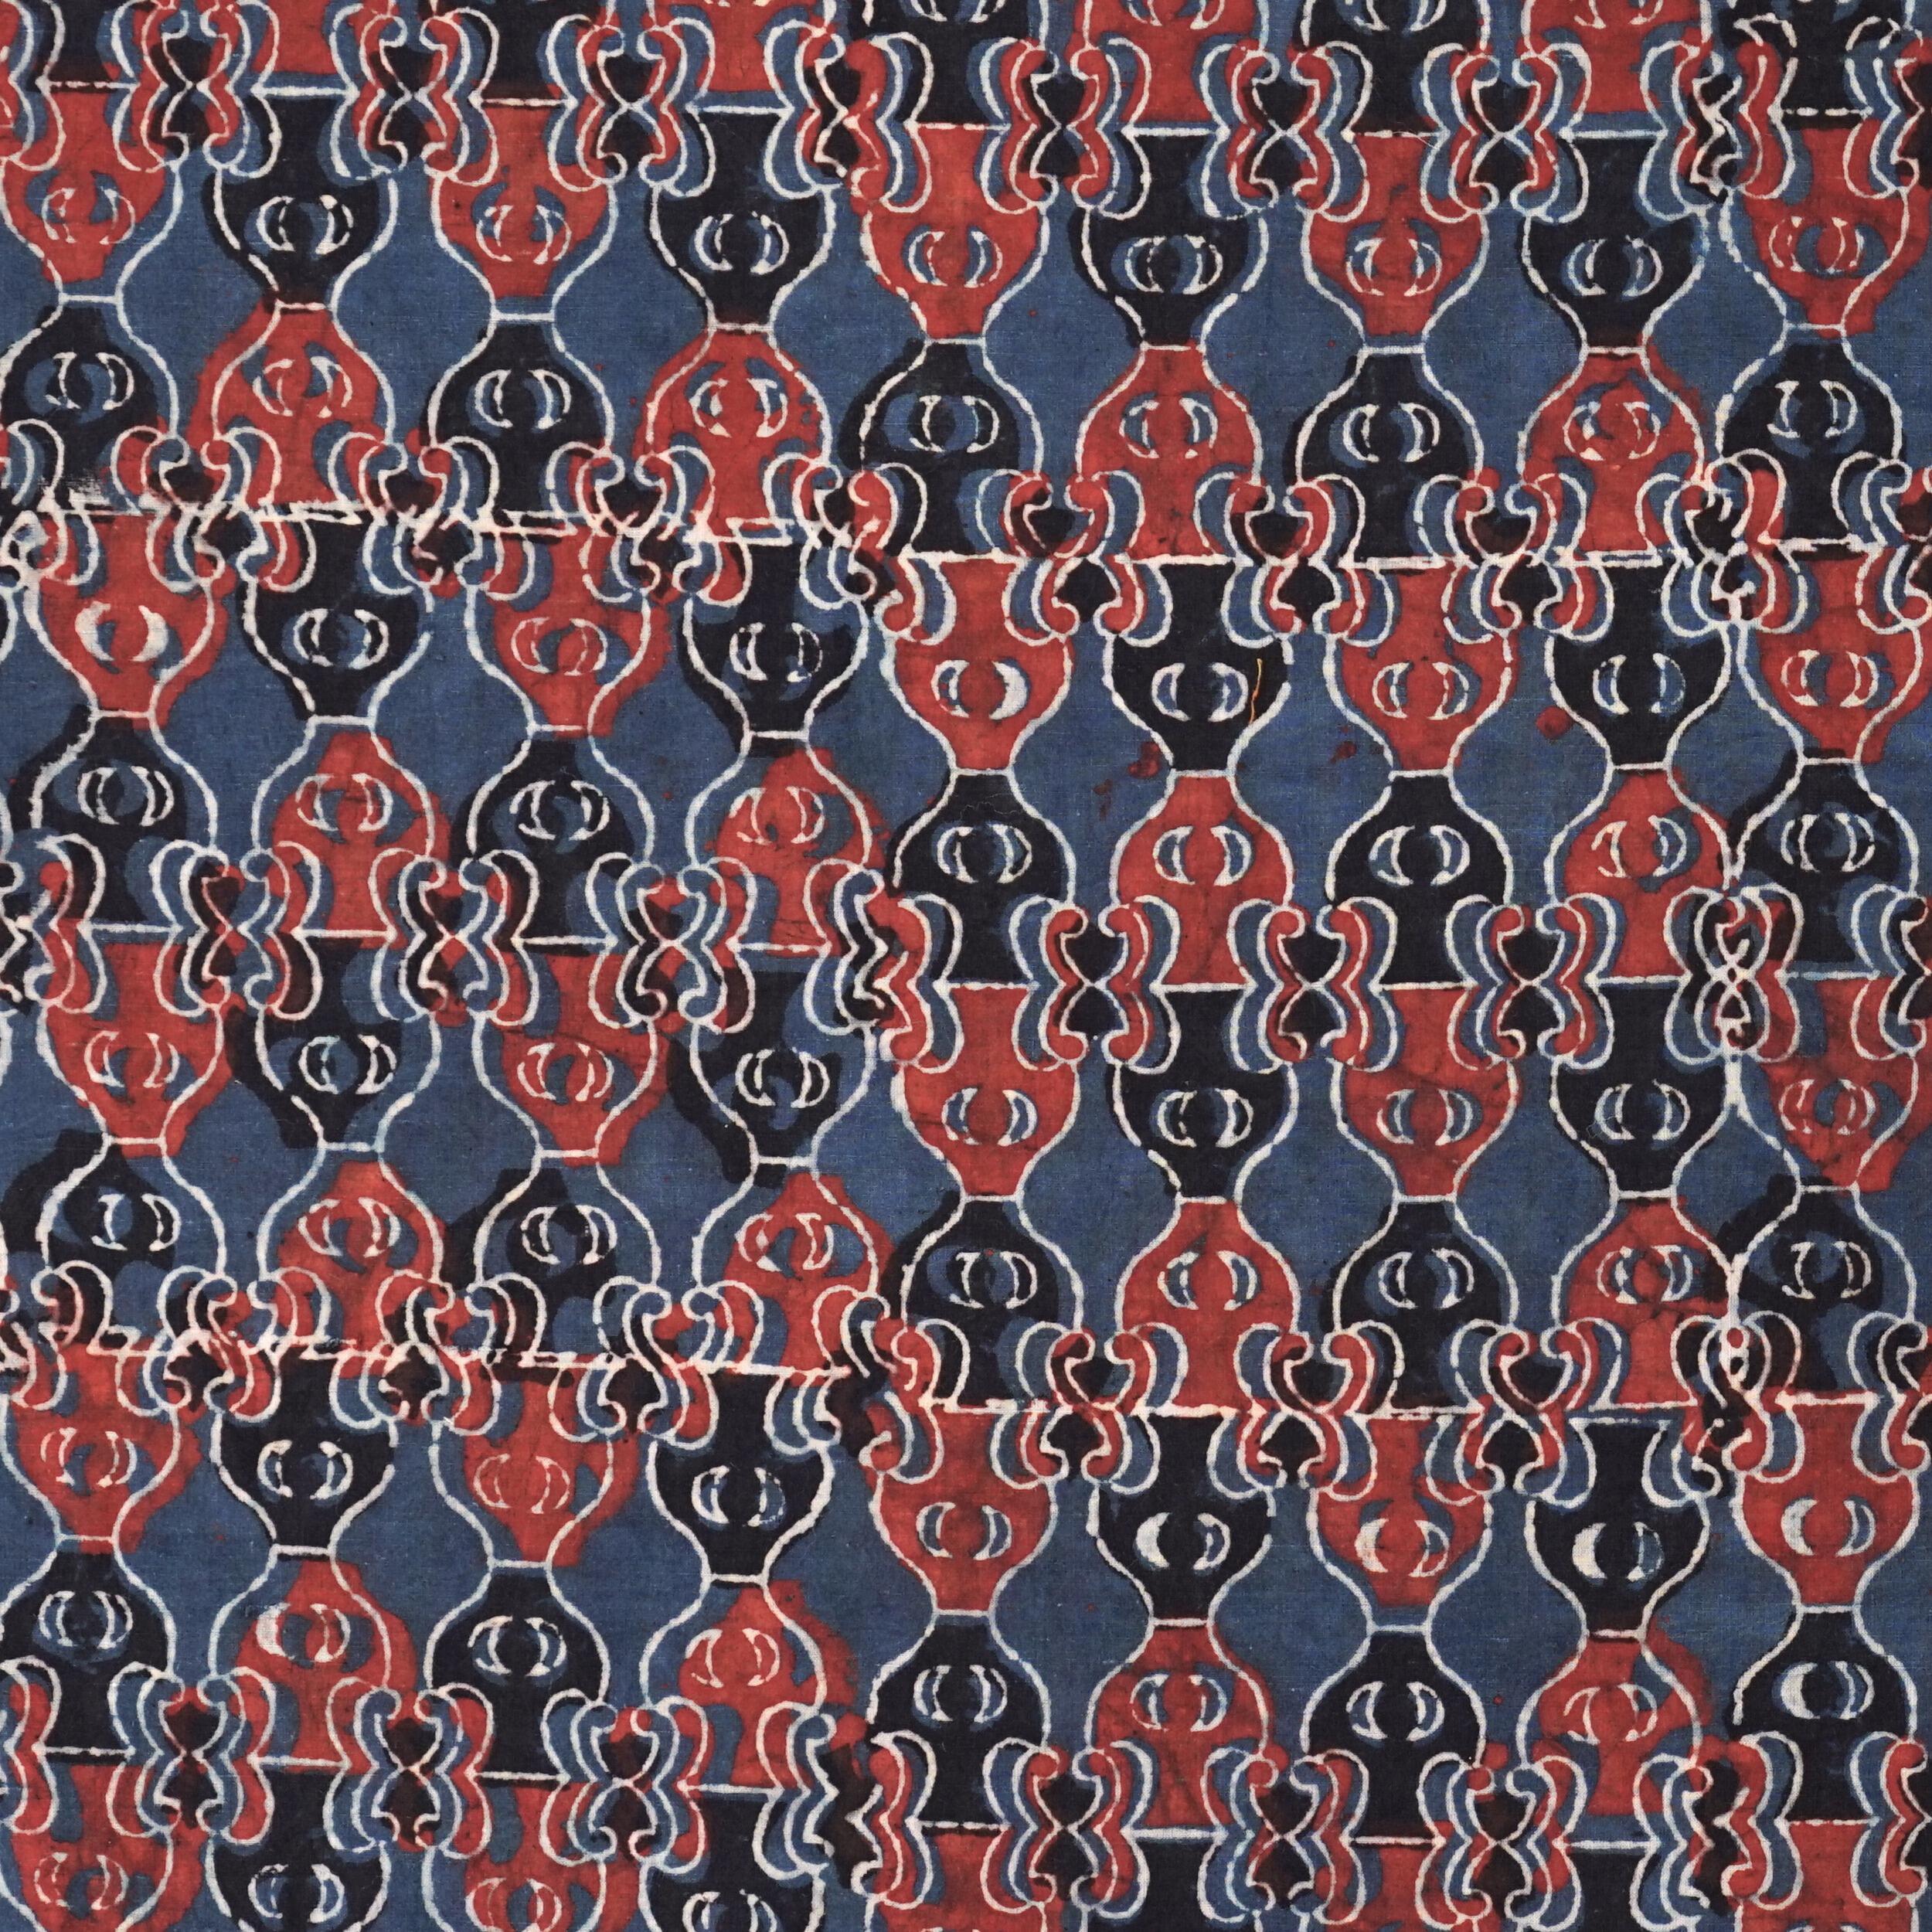 Block Printed Fabric, 100% Cotton, Ajrak Design: Indigo Blue Base, Iron Black, Madder Red Pump. Flat